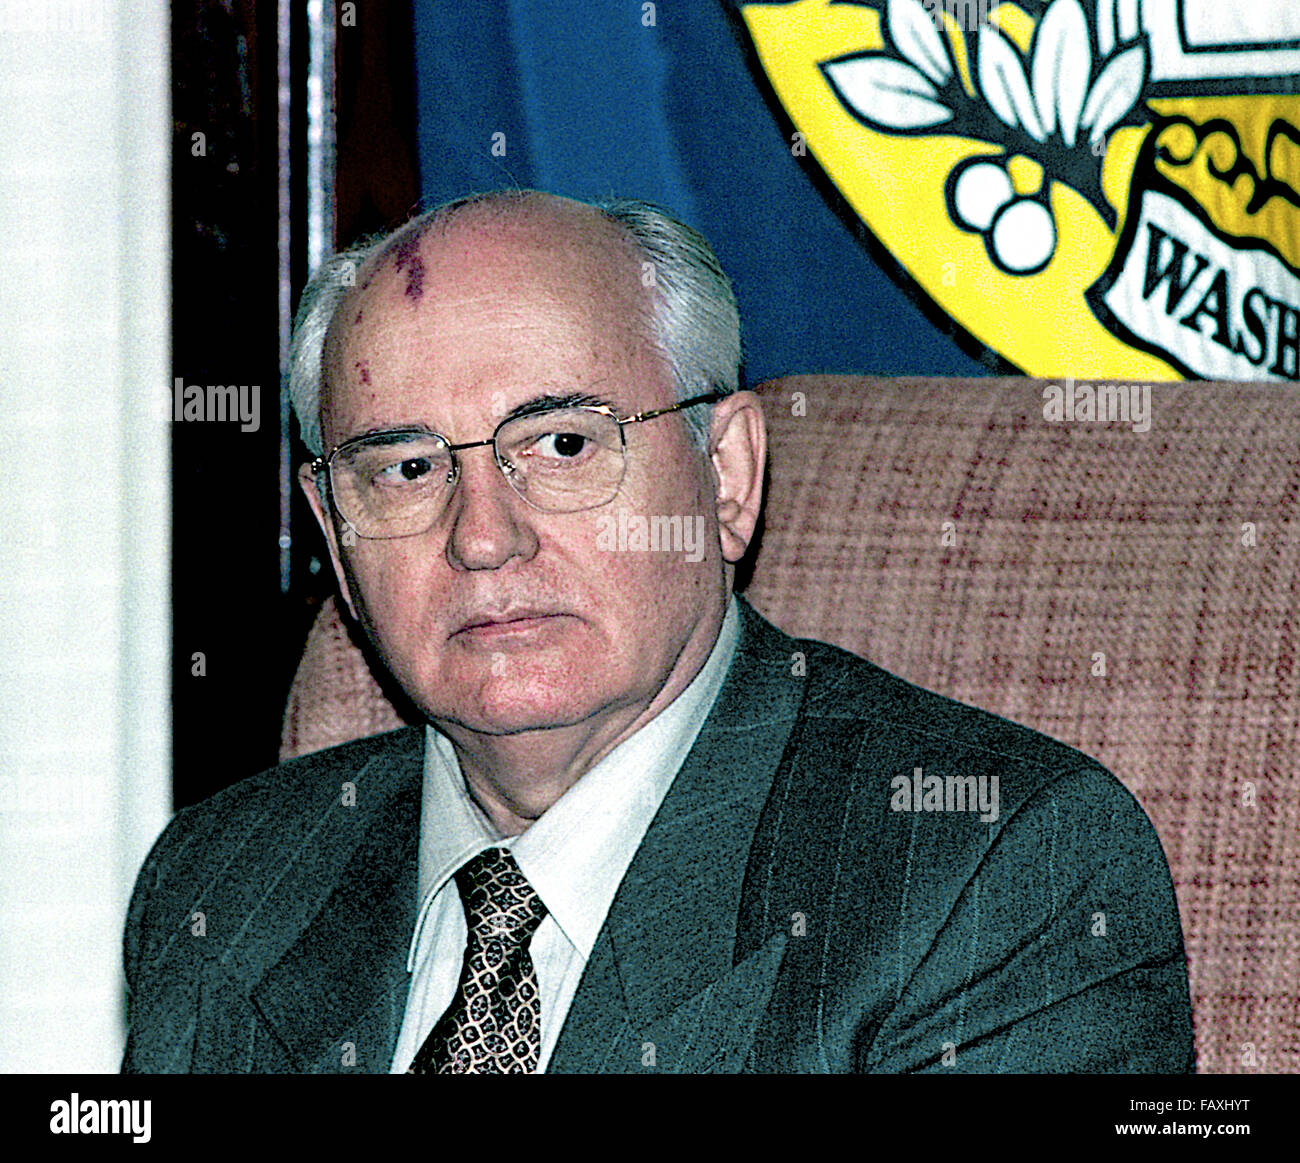 Washington, DC.USA, 25 octobre 1996, Mikhaïl Sergueïevitch Gorbatchev au National Press Club. Il était le huitième et dernier chef de l'Union soviétique, ayant servi comme Secrétaire Général du Parti communiste de l'Union soviétique de 1985 à 1991, lorsque le parti a été dissous. Il a occupé le poste de chef de l'Etat à partir de 1988 jusqu'à sa dissolution en 1991 (le titre de président du Présidium du Soviet suprême de 1988 à 1989, en tant que Président du Soviet suprême de 1989 à 1990, et comme président de l'Union soviétique de 1990 à 1991). Credit : Mark Reinstein Banque D'Images